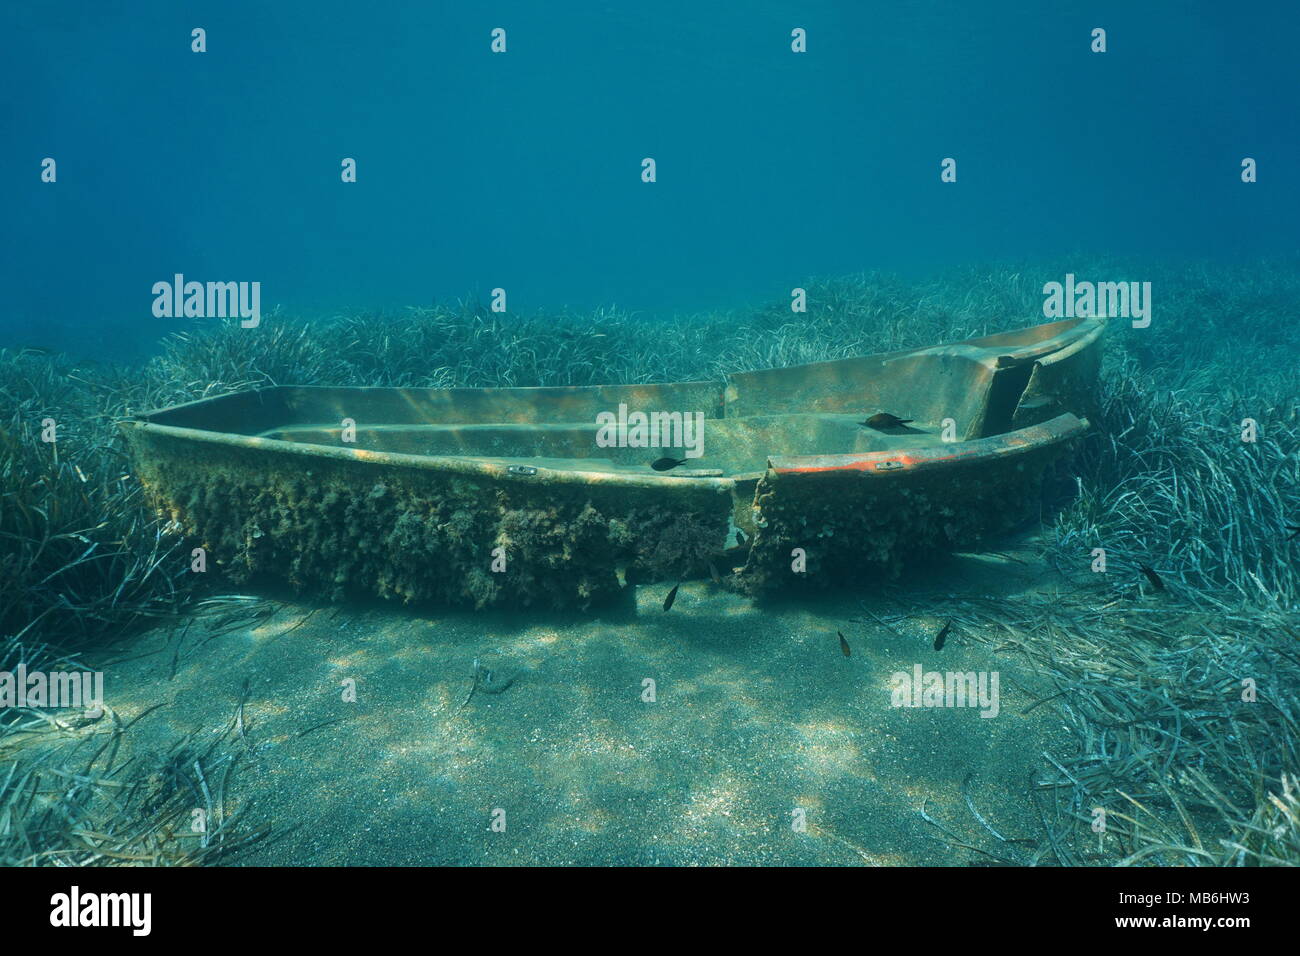 Un petit bateau cassé sur le fond marin sous-marins dans la mer Méditerranée, la Catalogne, Costa Brava, Espagne Banque D'Images